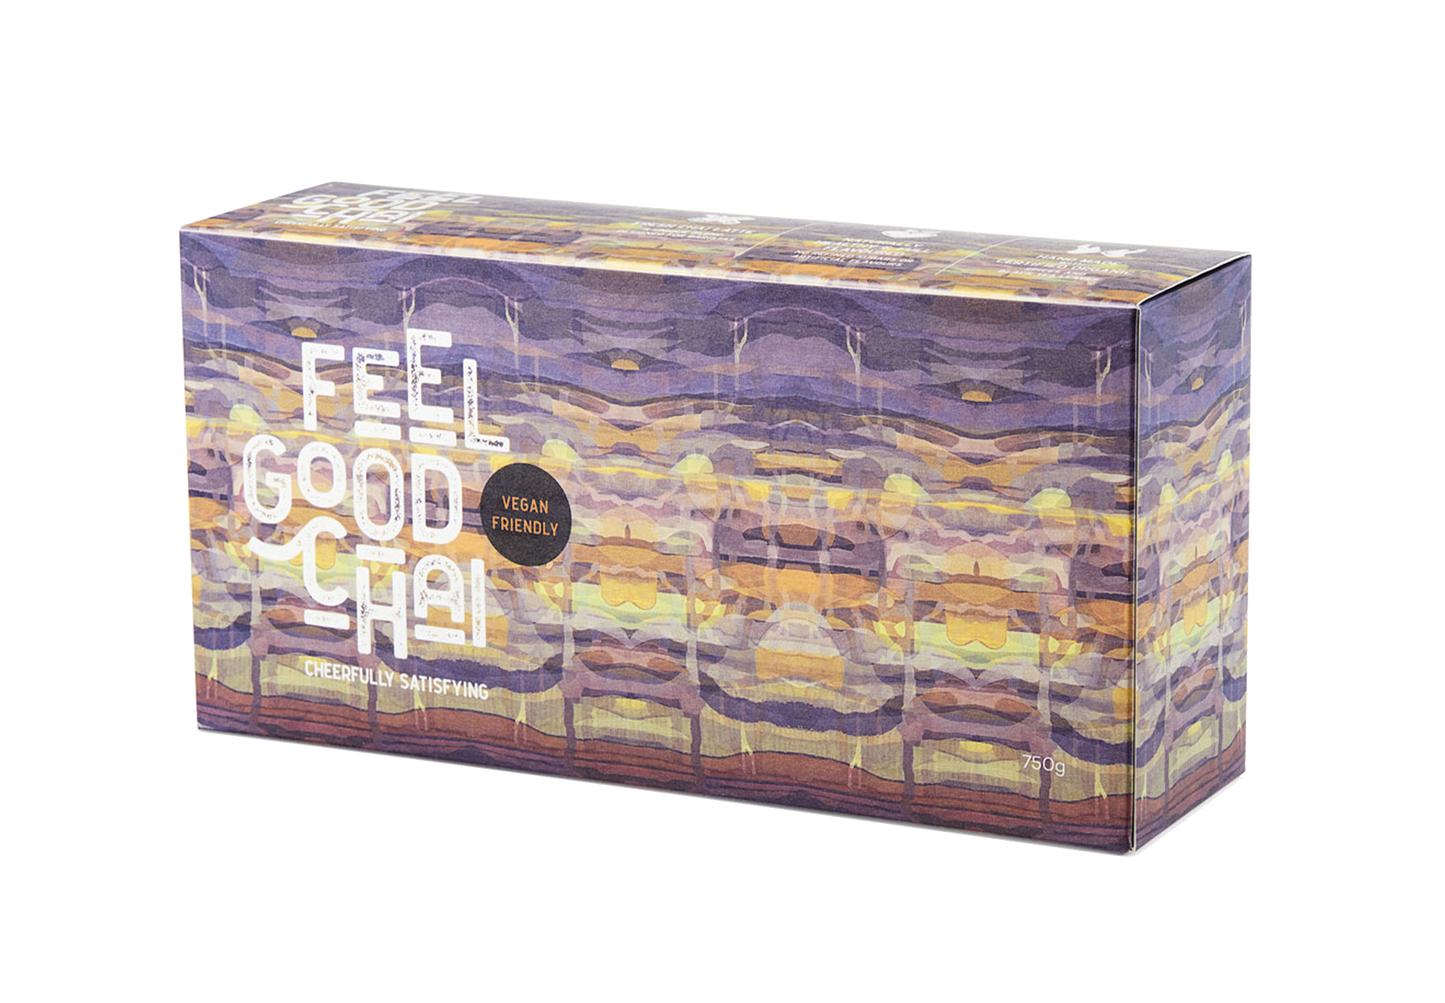 Feel Good Chai | Vegan | 750g